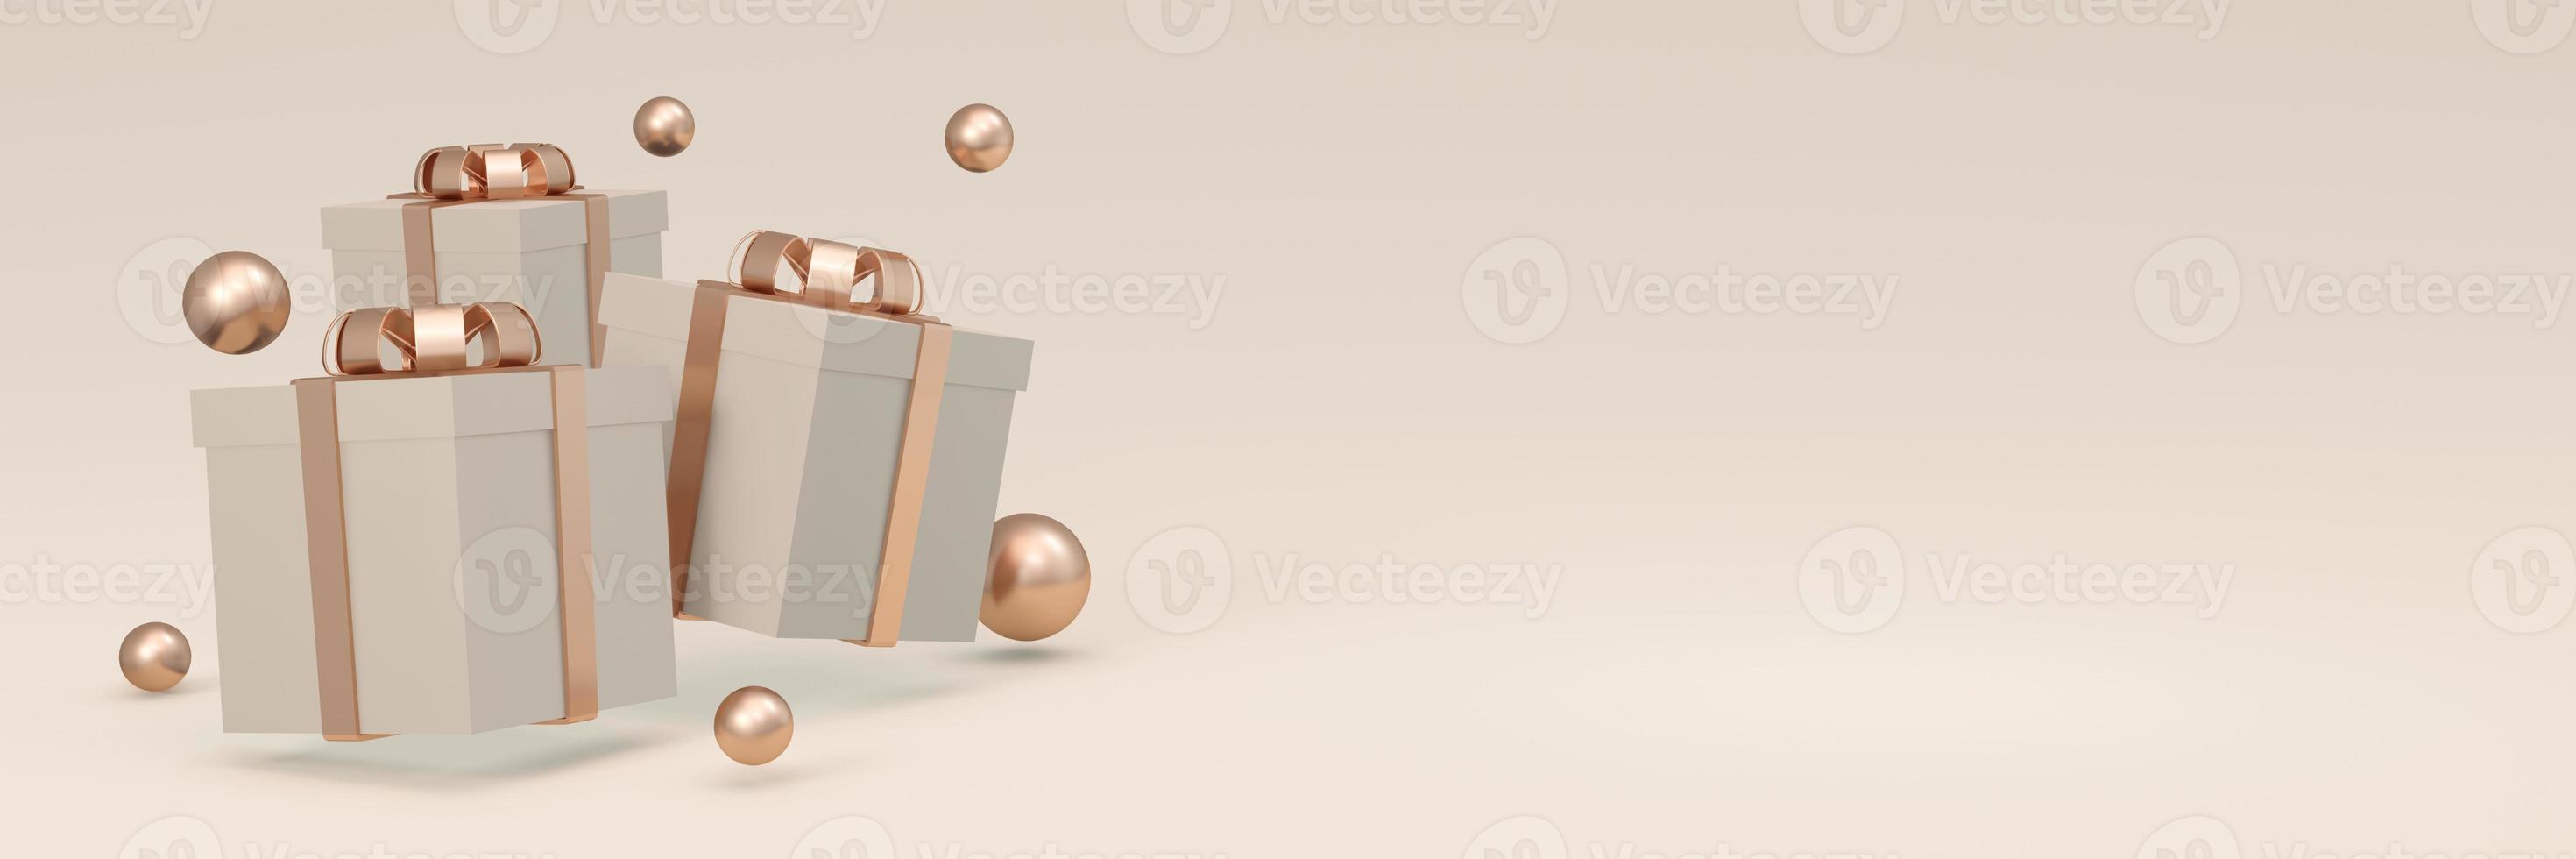 Rendu 3d d'une boîte-cadeau emballée flottant sur un long fond horizontal dans un thème beige doré. illustration de rendu 3d. photo